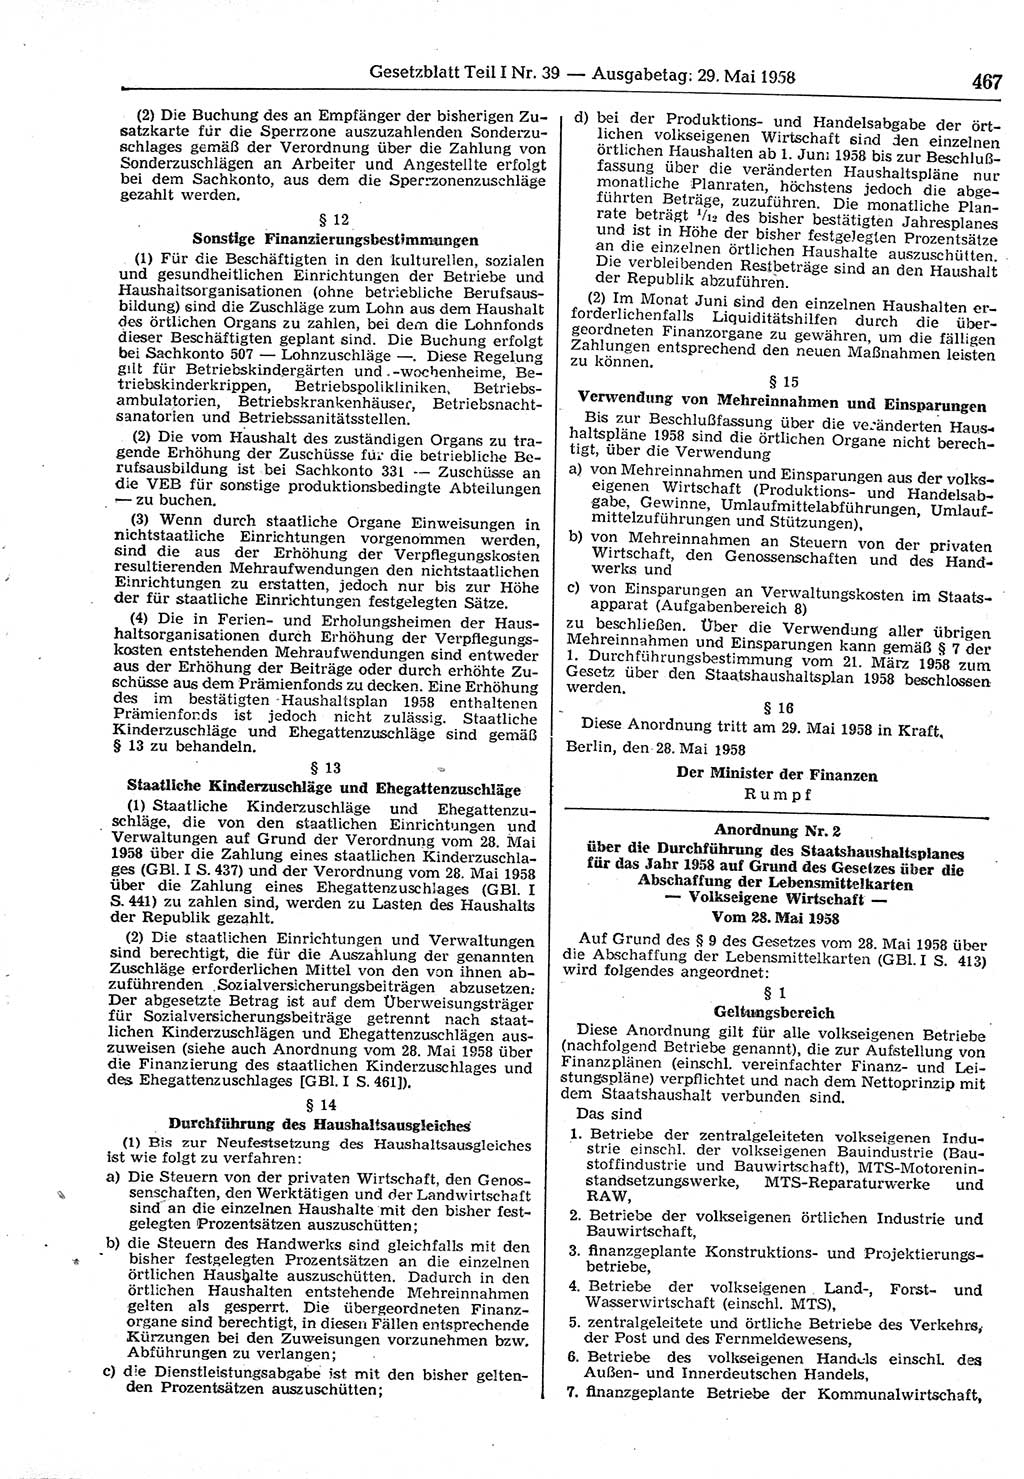 Gesetzblatt (GBl.) der Deutschen Demokratischen Republik (DDR) Teil Ⅰ 1958, Seite 467 (GBl. DDR Ⅰ 1958, S. 467)